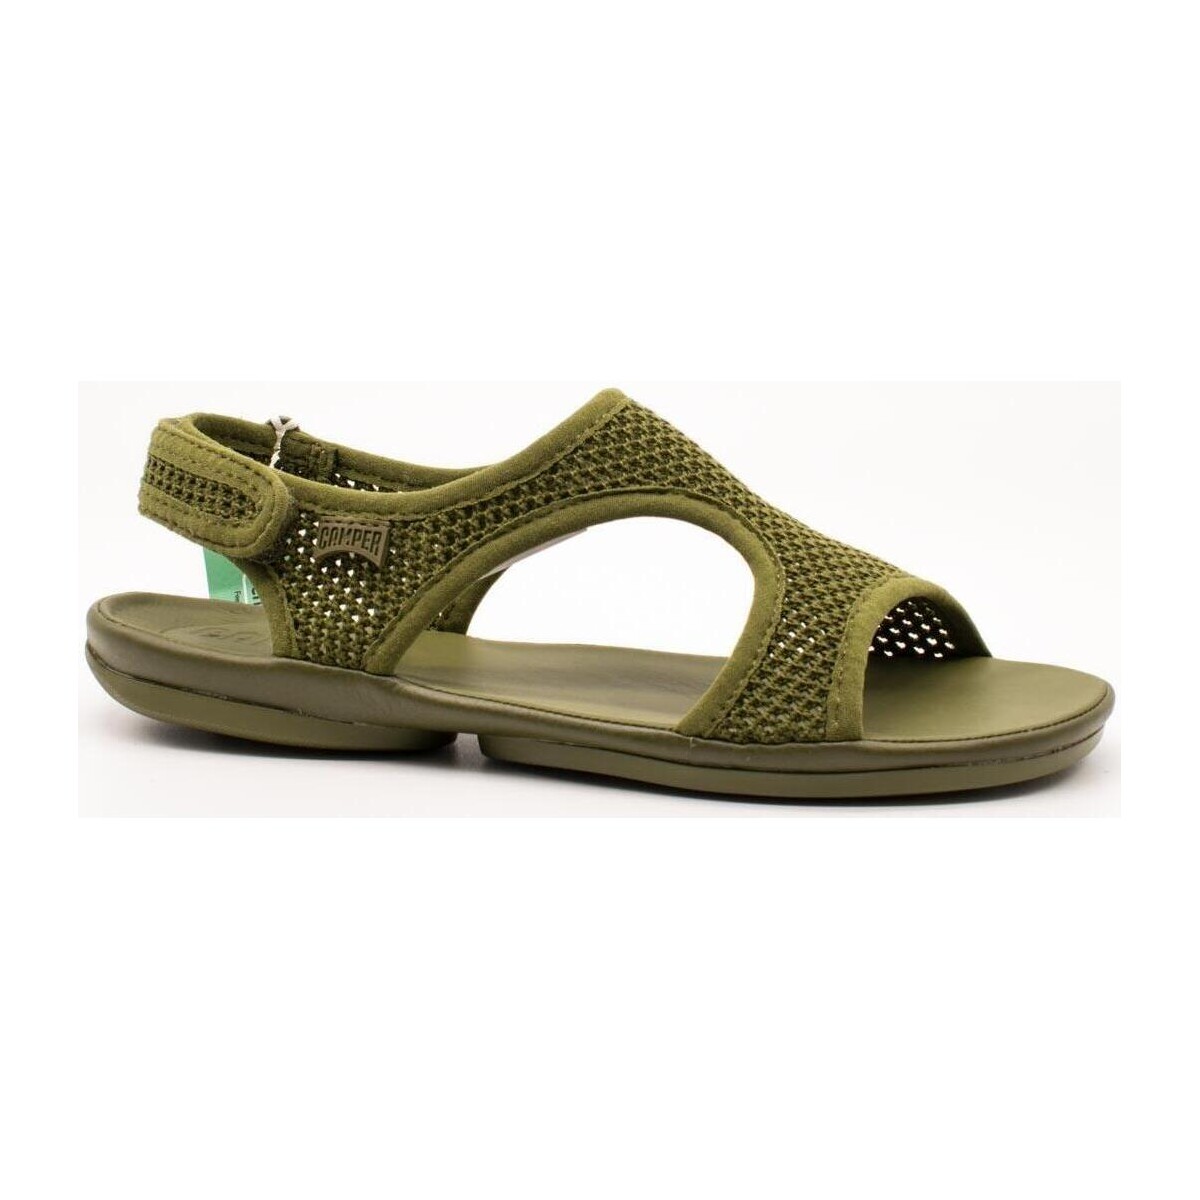 Boty Ženy Sandály Camper  Zelená